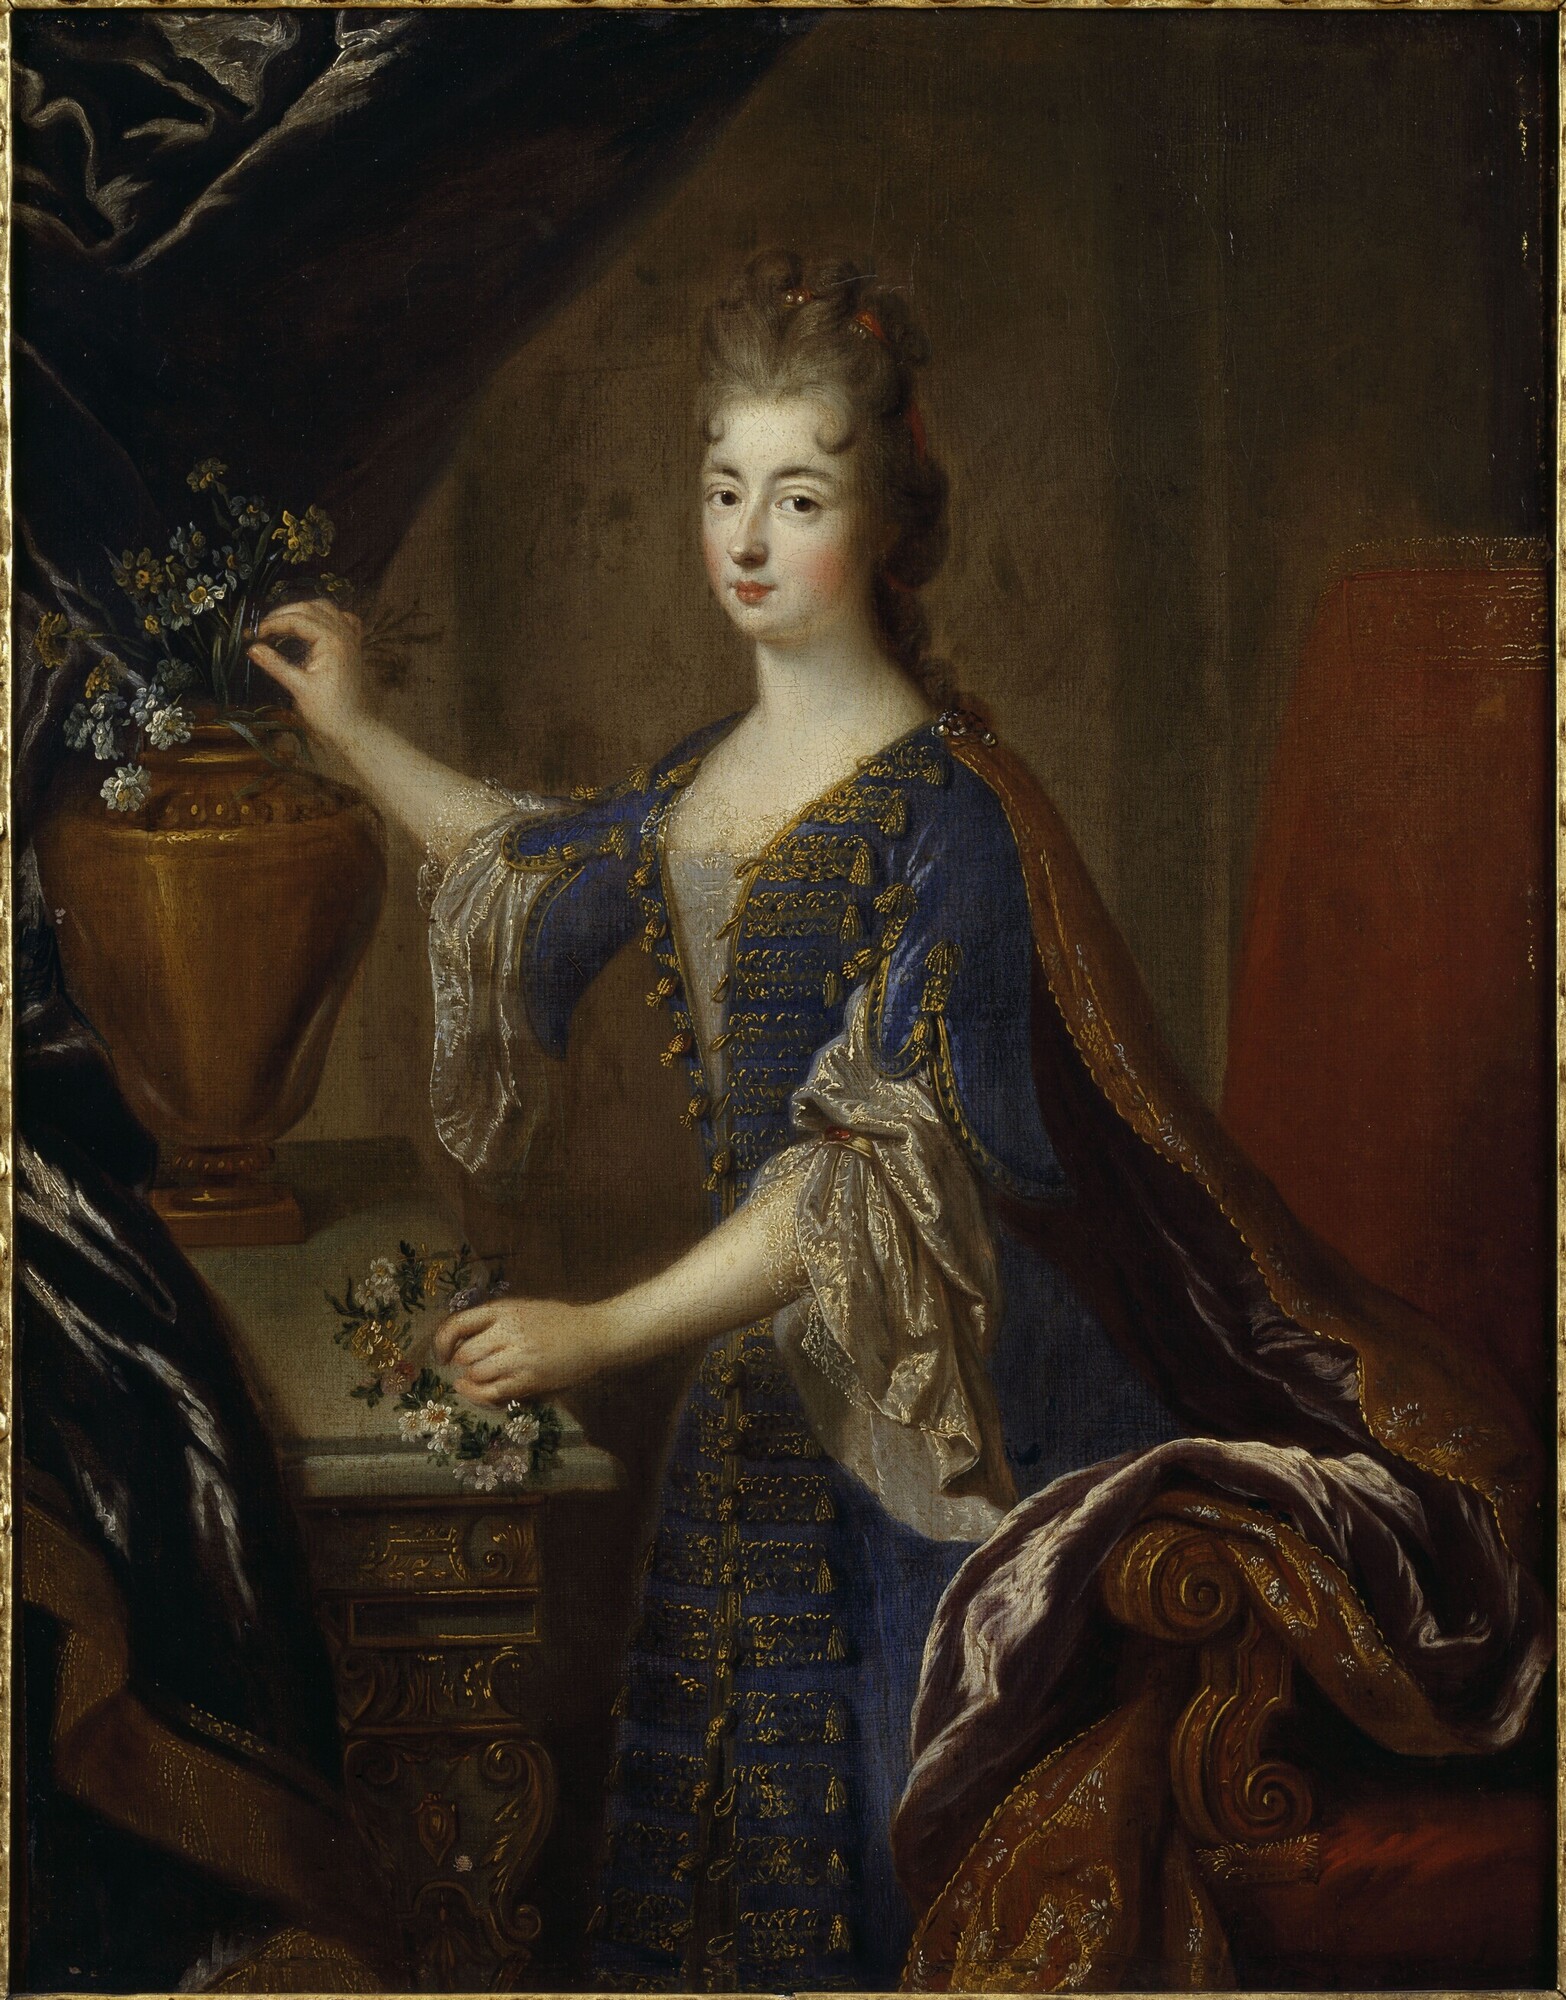 Full portrait of Marie Anne de Bourbon (1666-1739) by François de Troy